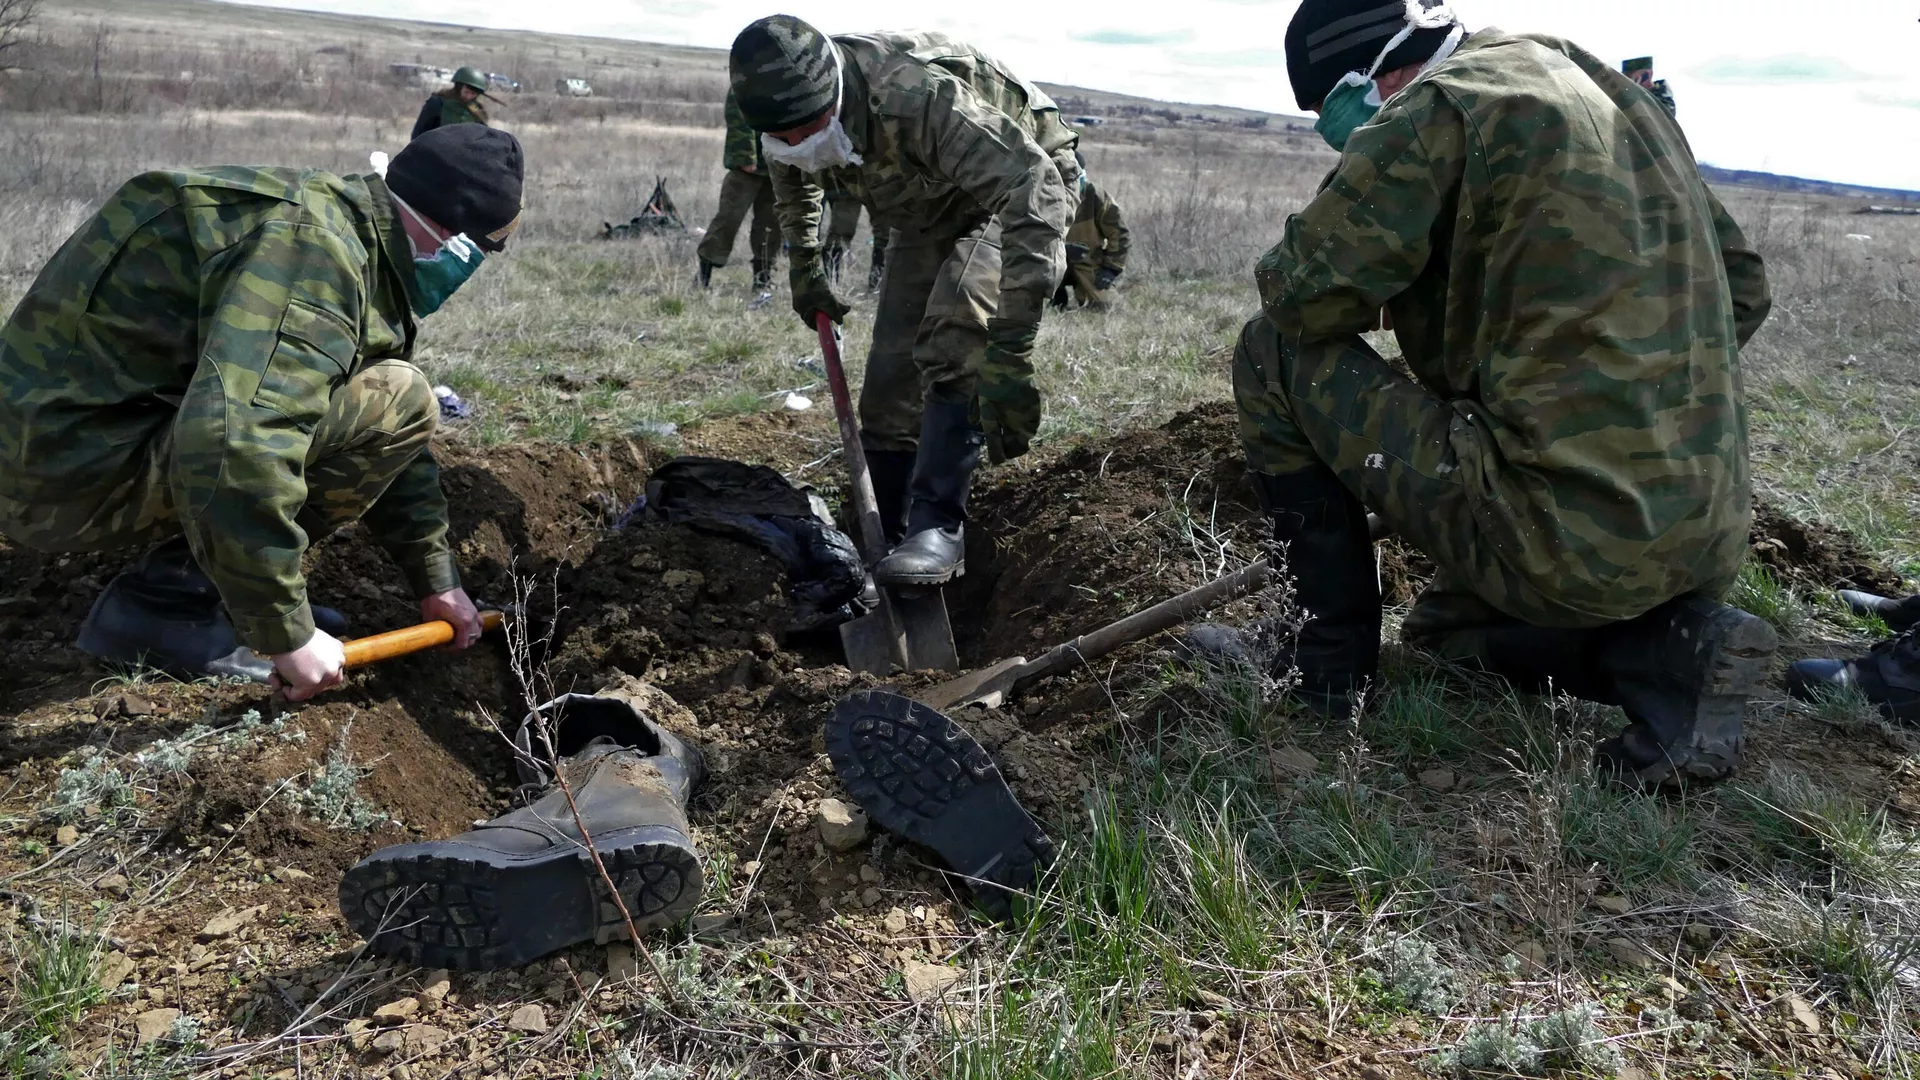 ضابط استخبارات أمريكي: القوات الروسية تقضي بسهولة على الجنود الأوكرانيين في ساحة المعركة 1063366753_0:291:3073:2019_1920x0_80_0_0_5267ddf8f48298ff3e8f48c74e1488ca.jpg